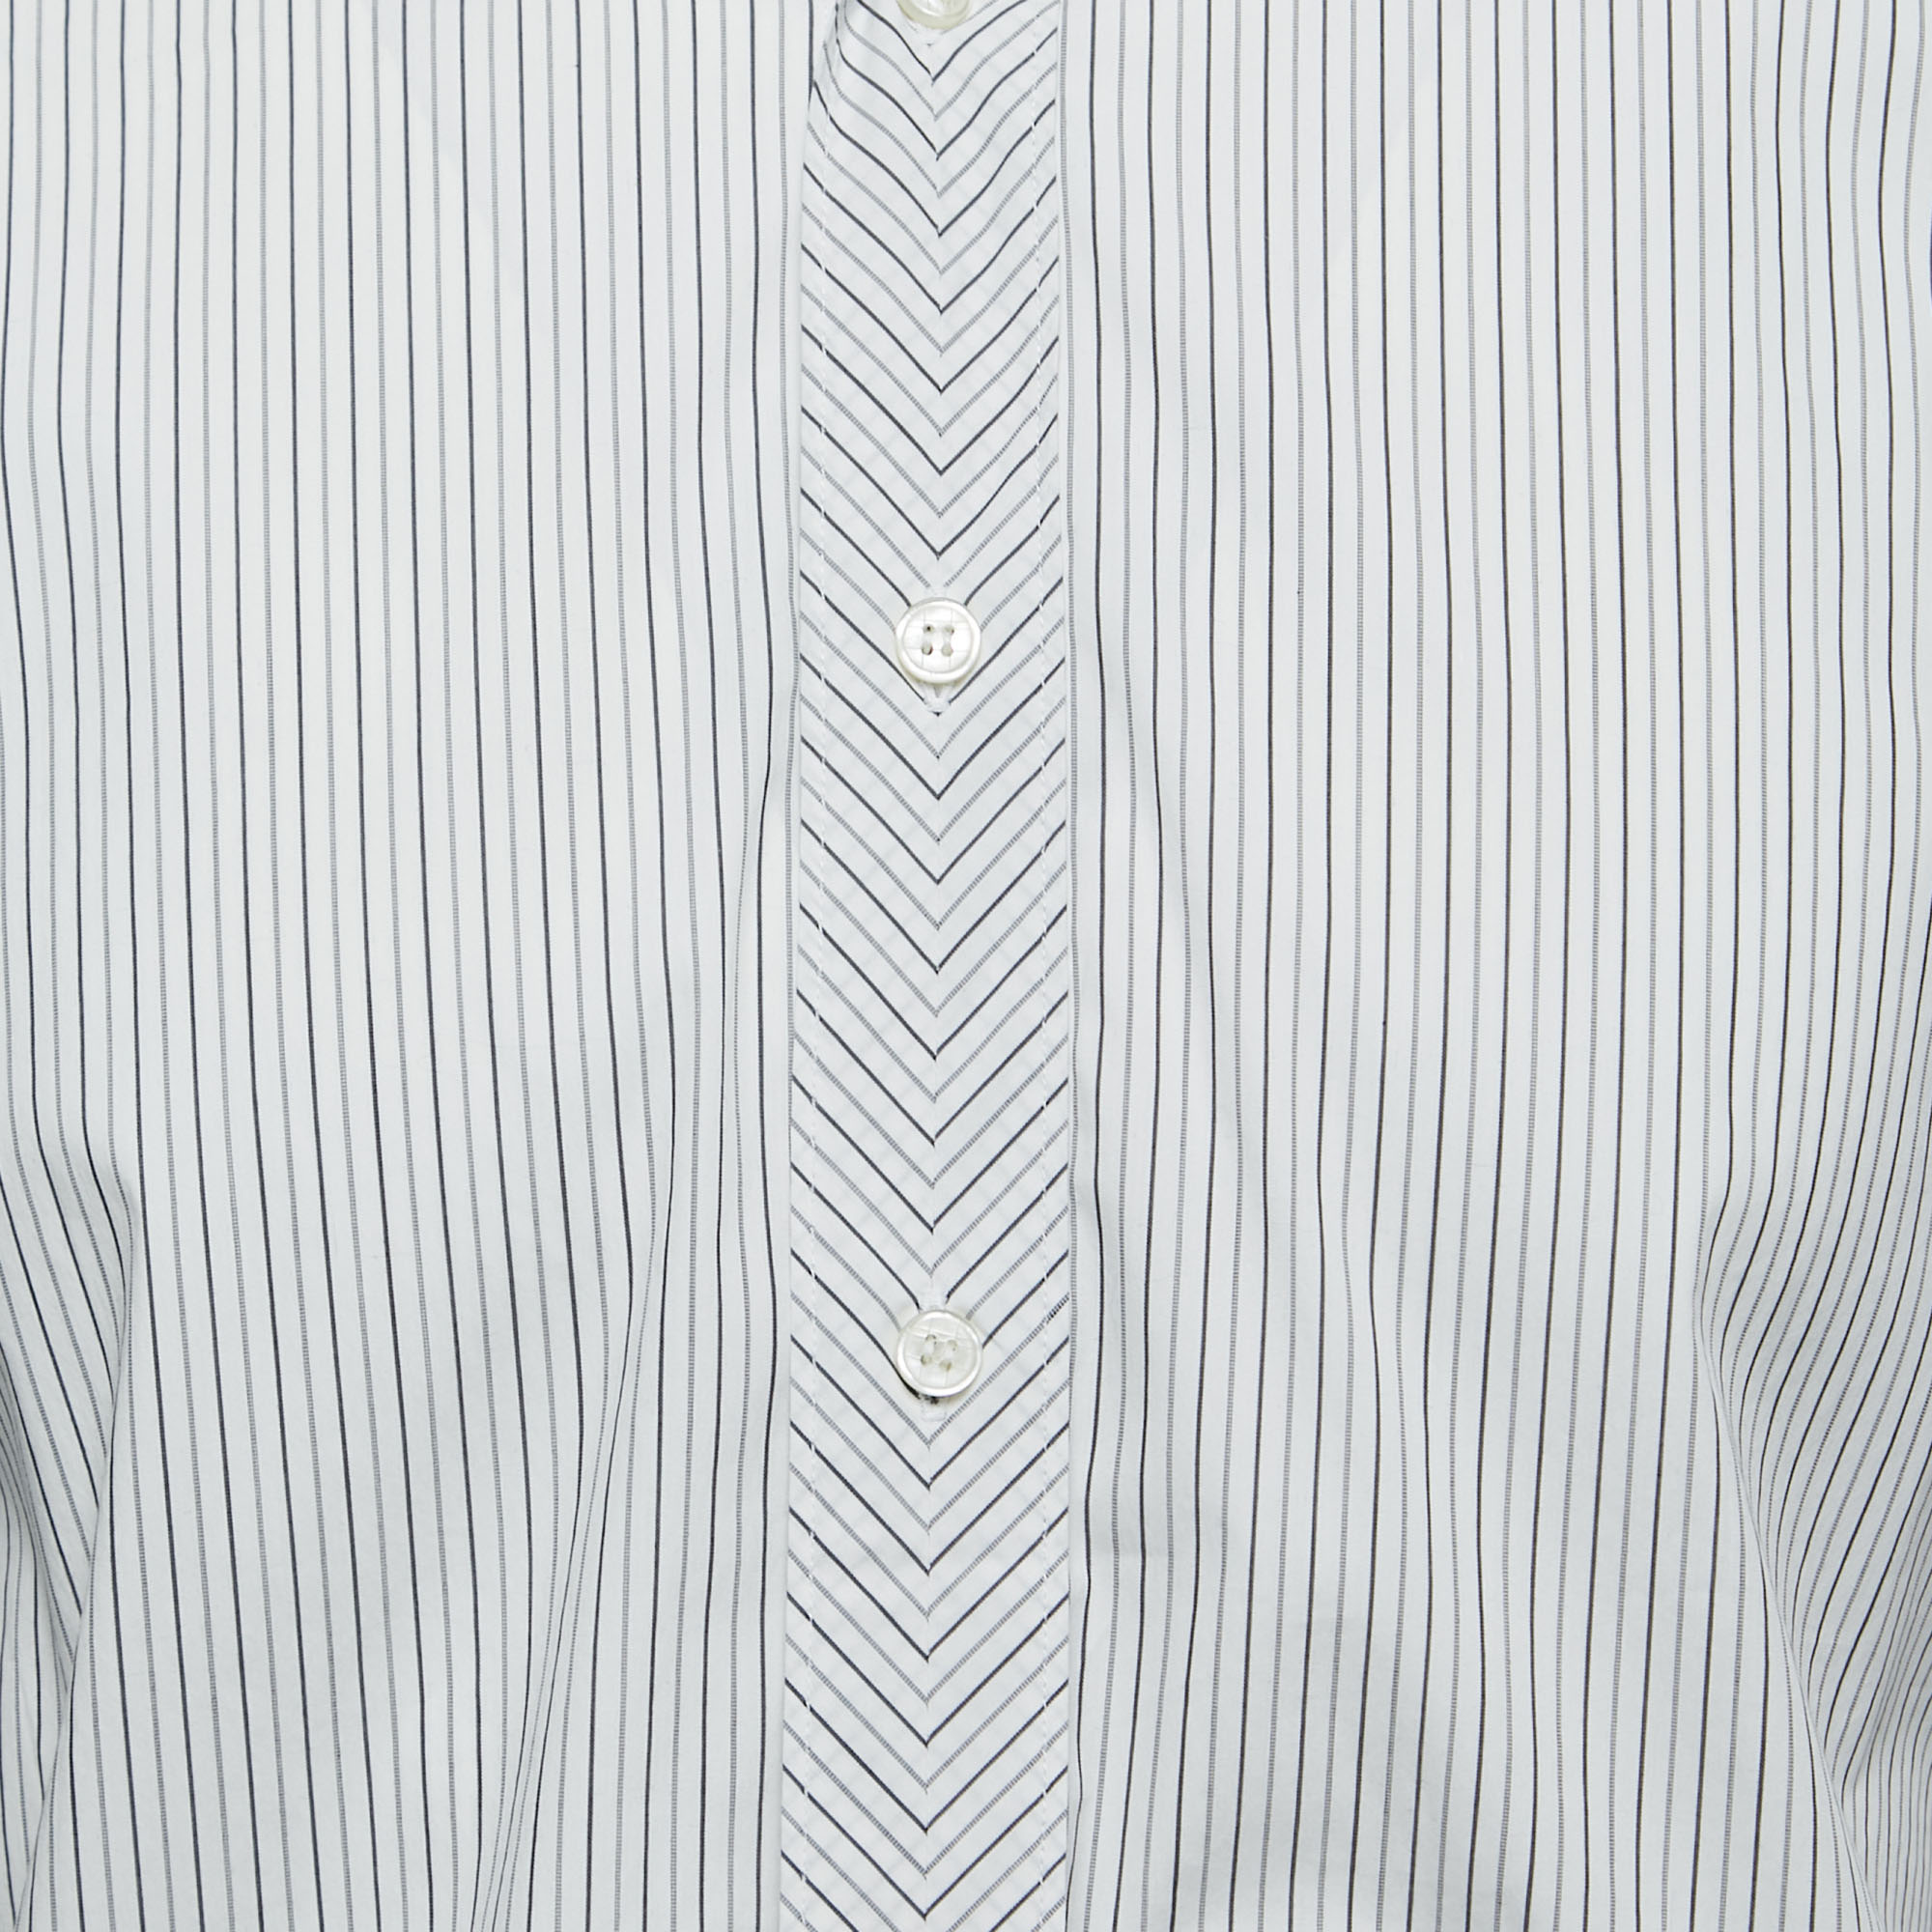 Z Zegna White Striped Stretch Cotton Button Front Shirt XL